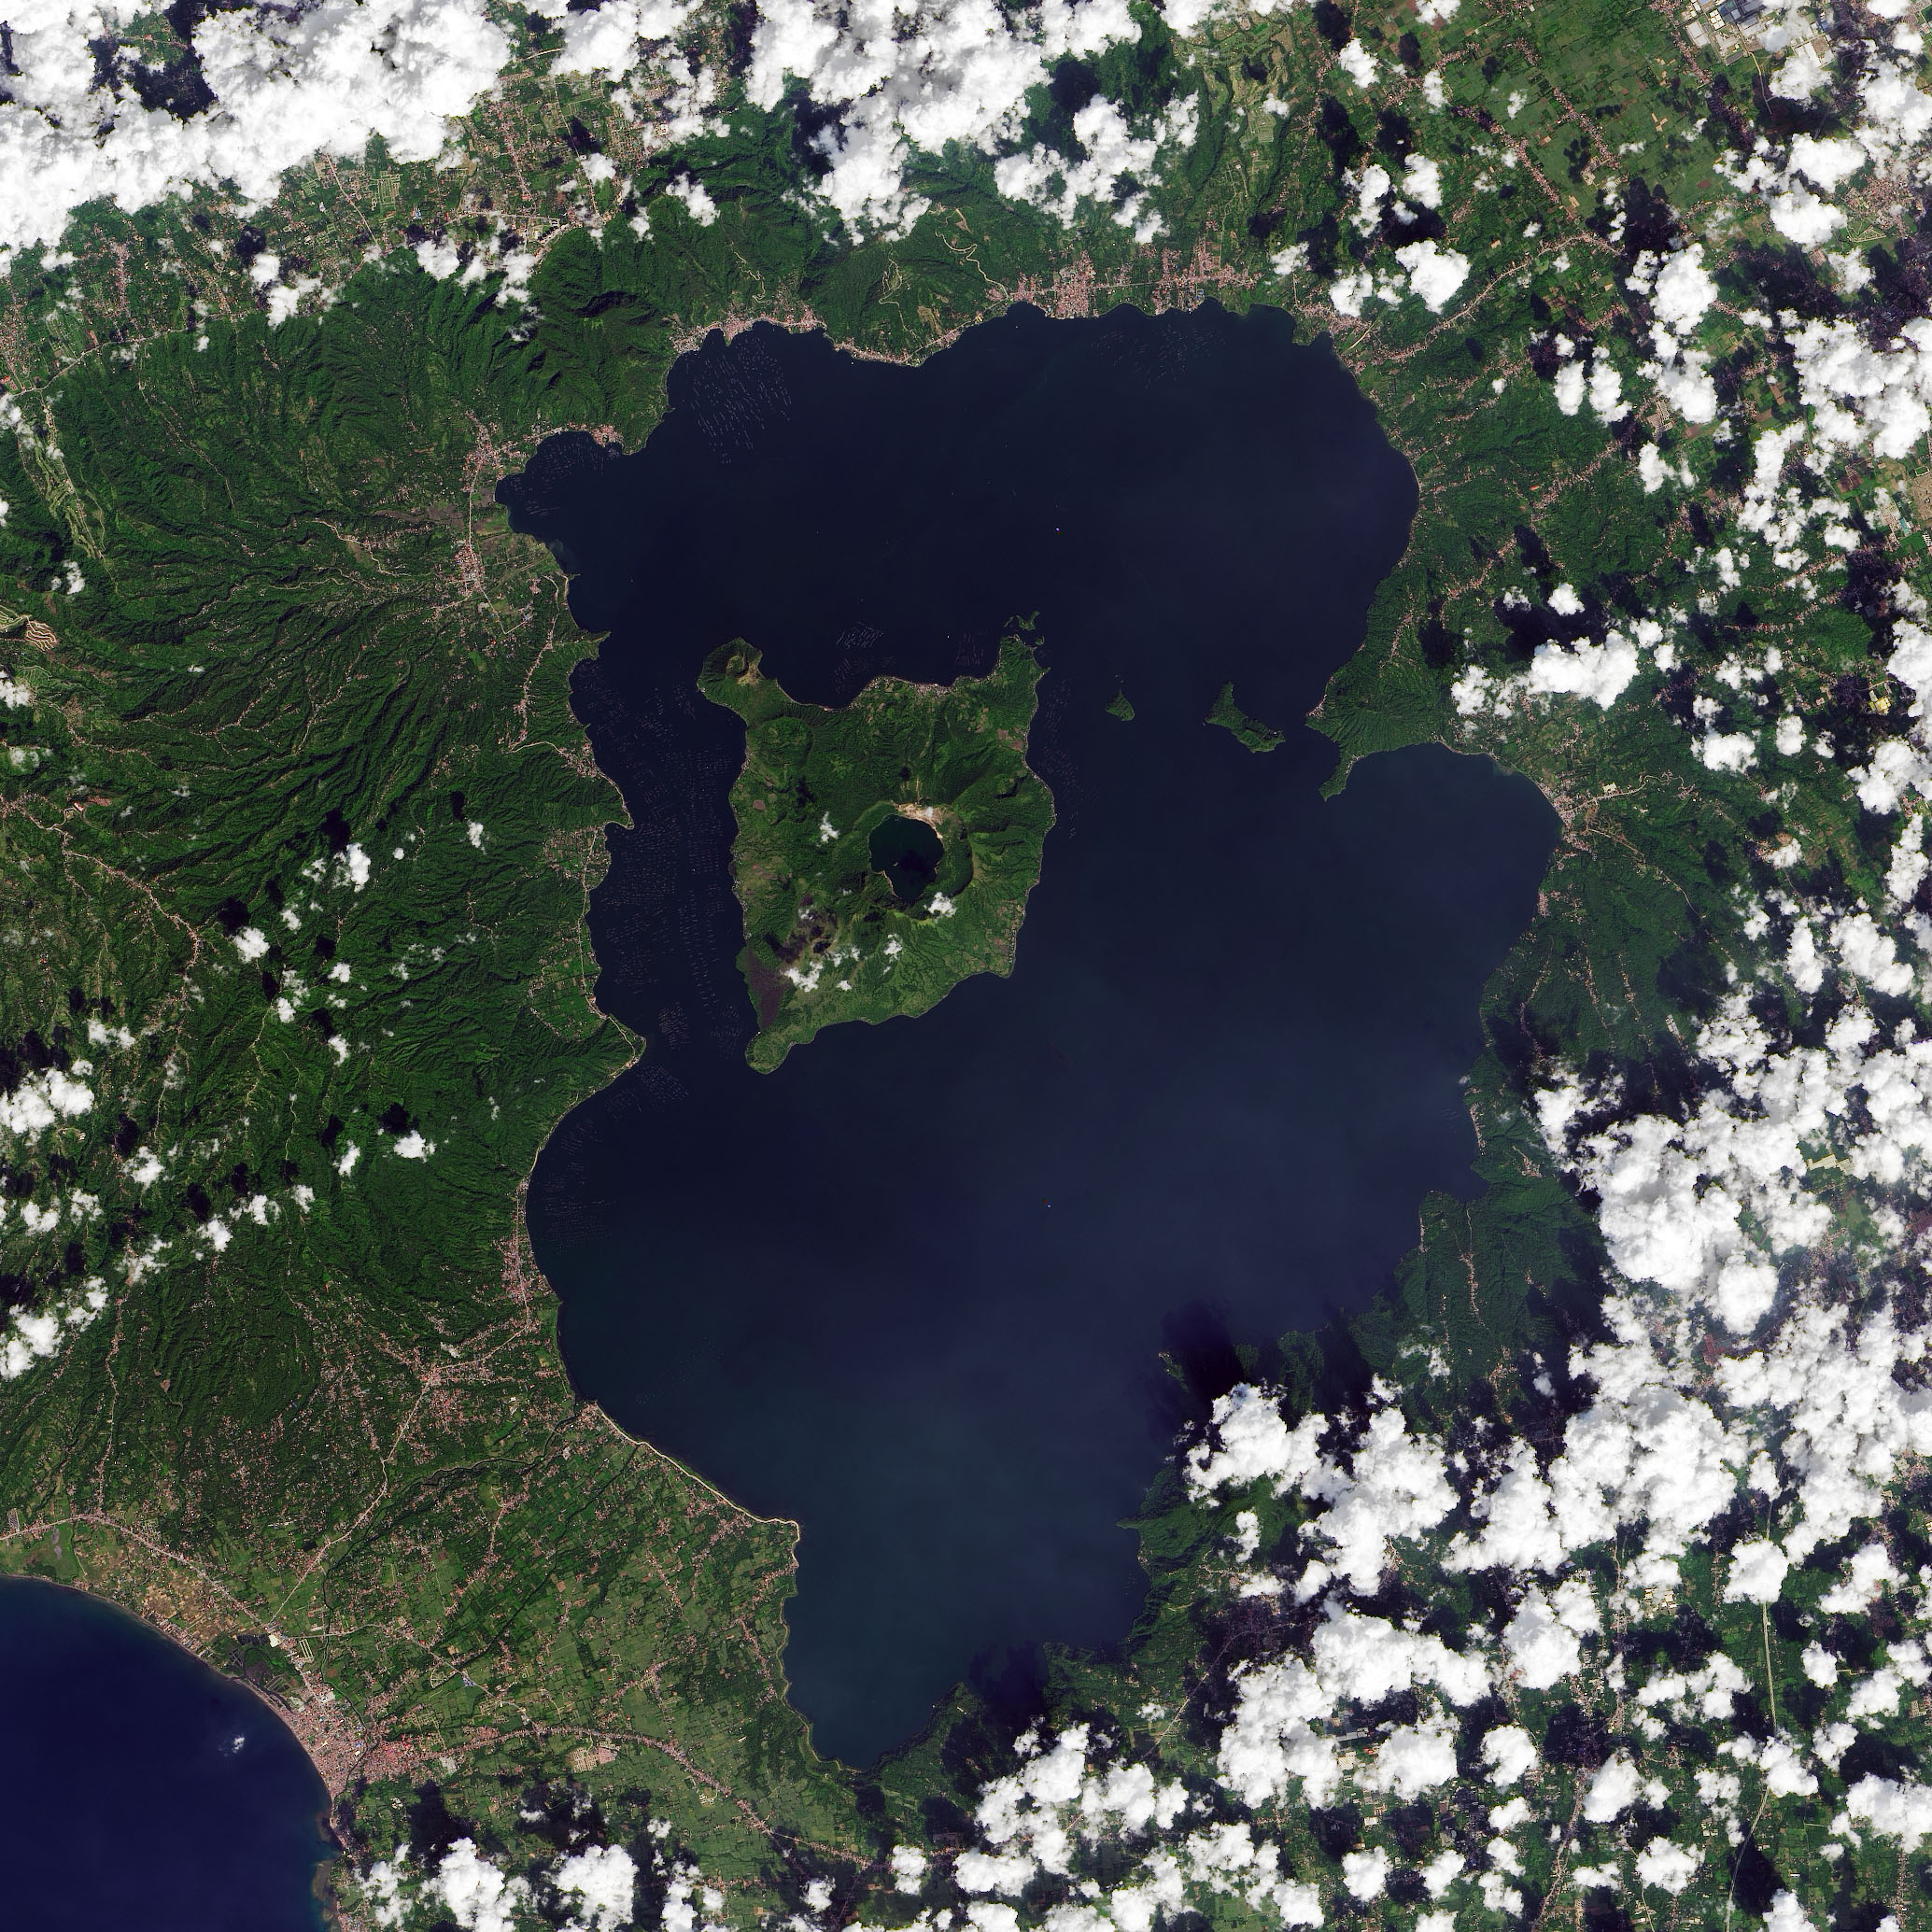 Фото со спутника в реальном времени. Спутниковый снимок. Снимки со спутника. Космический снимок местности. Острова со спутника.